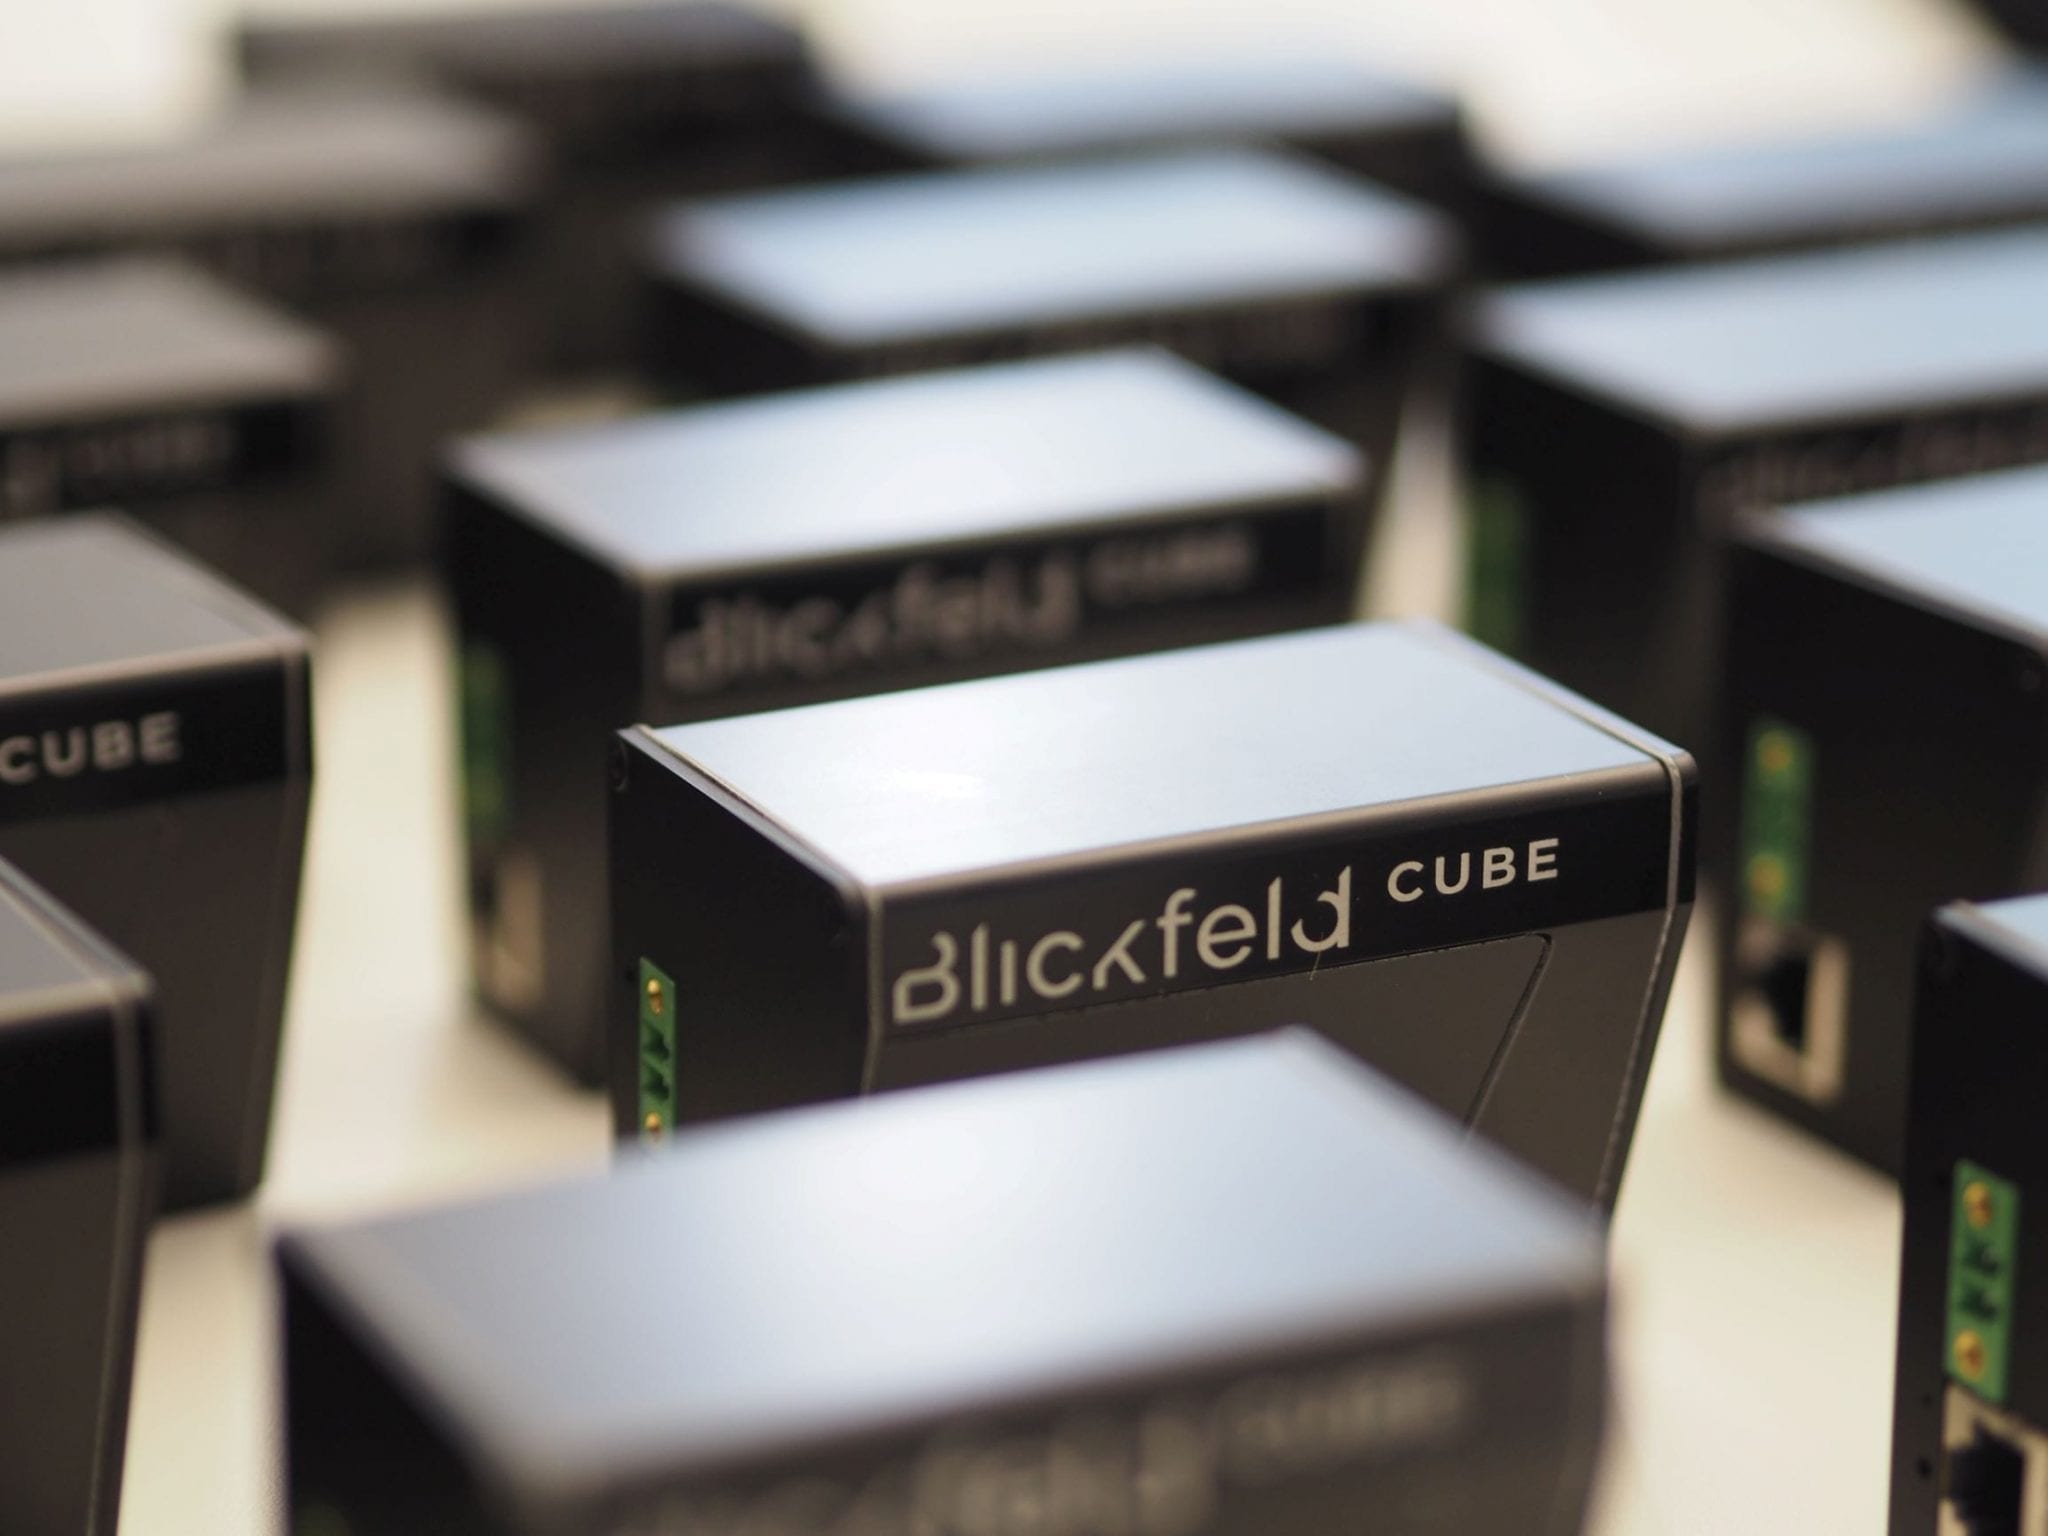 Blickfeld developed LiDAR sensors for the mass market